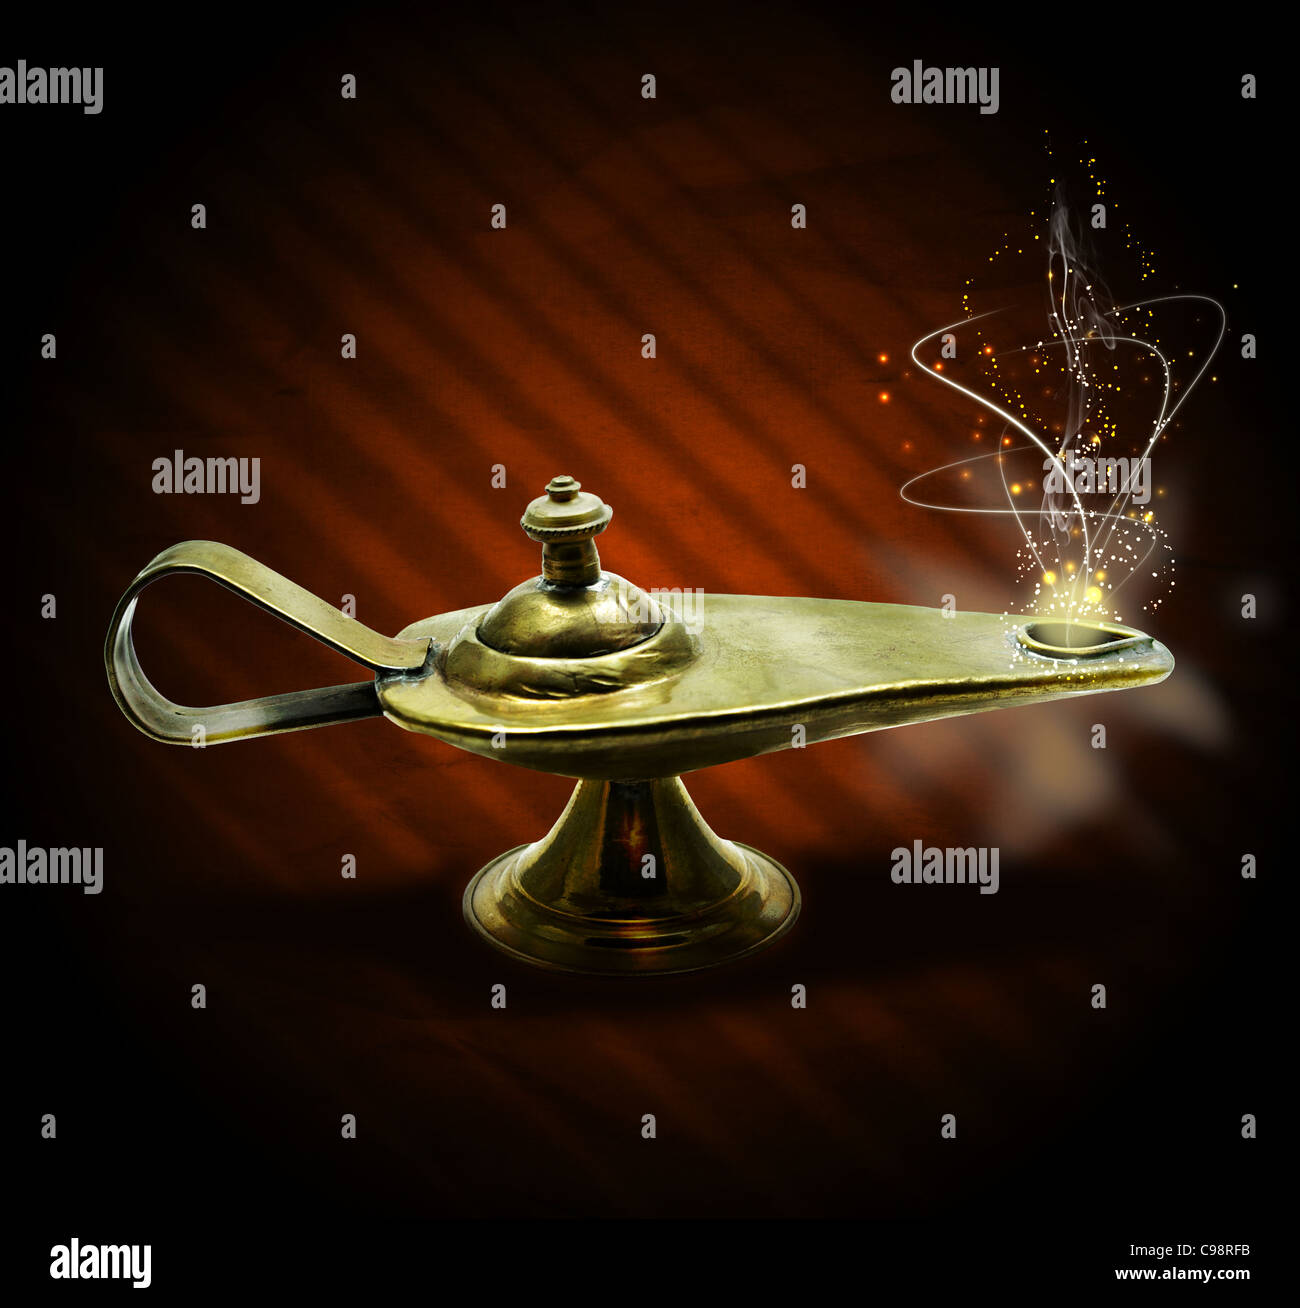 magische Aladin Lampe mit magischen Rauch und Funken auf braunem Hintergrund: 3 Wünsche frei Stockfoto